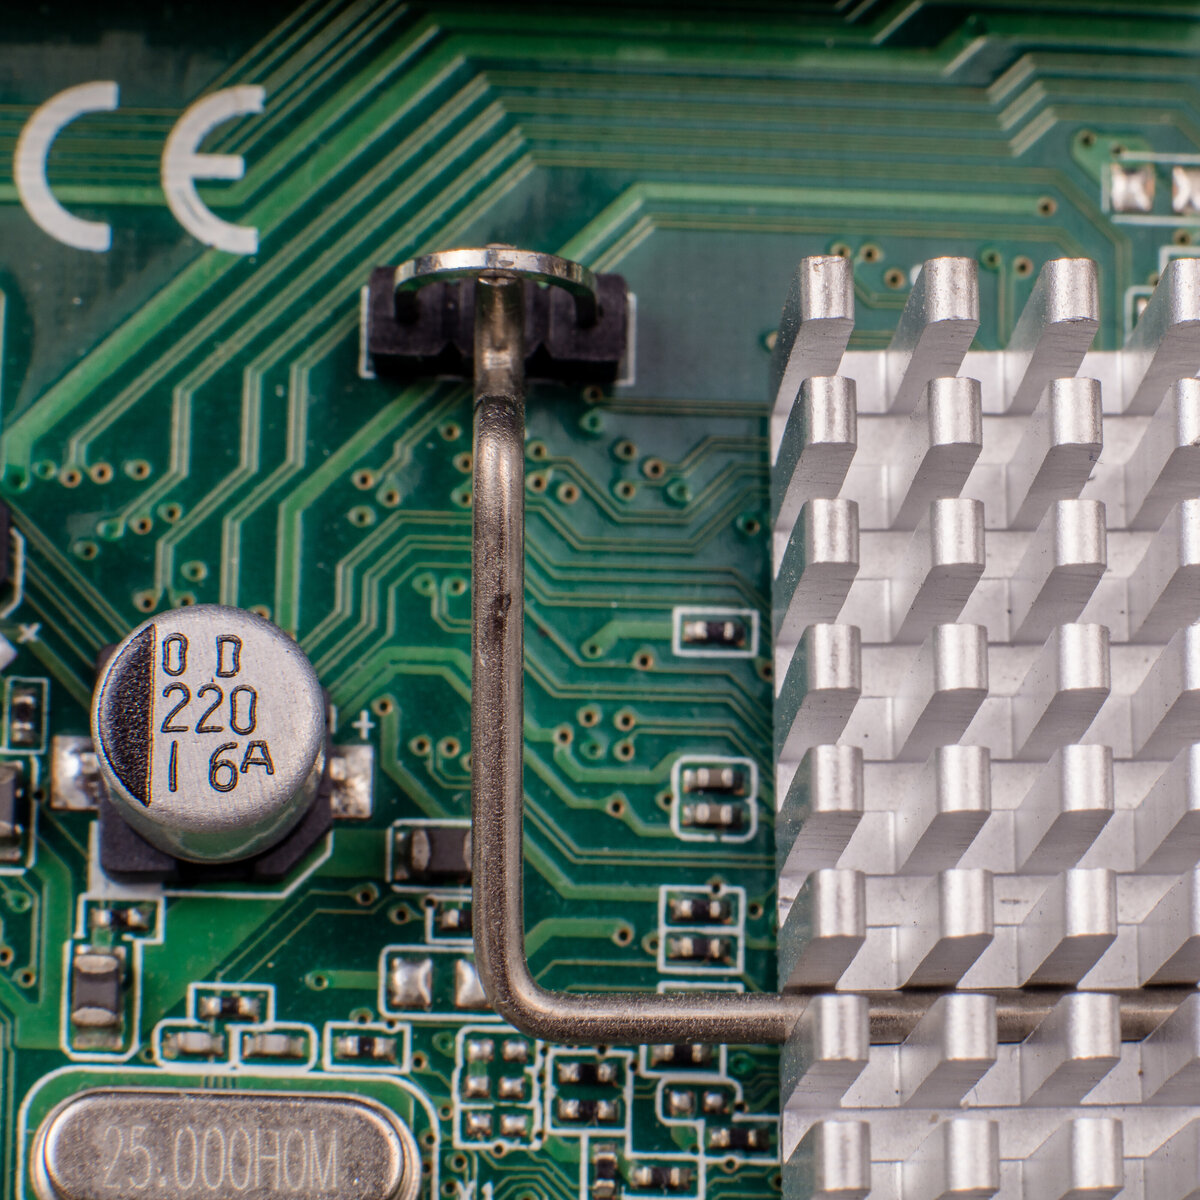 PC Circuitry